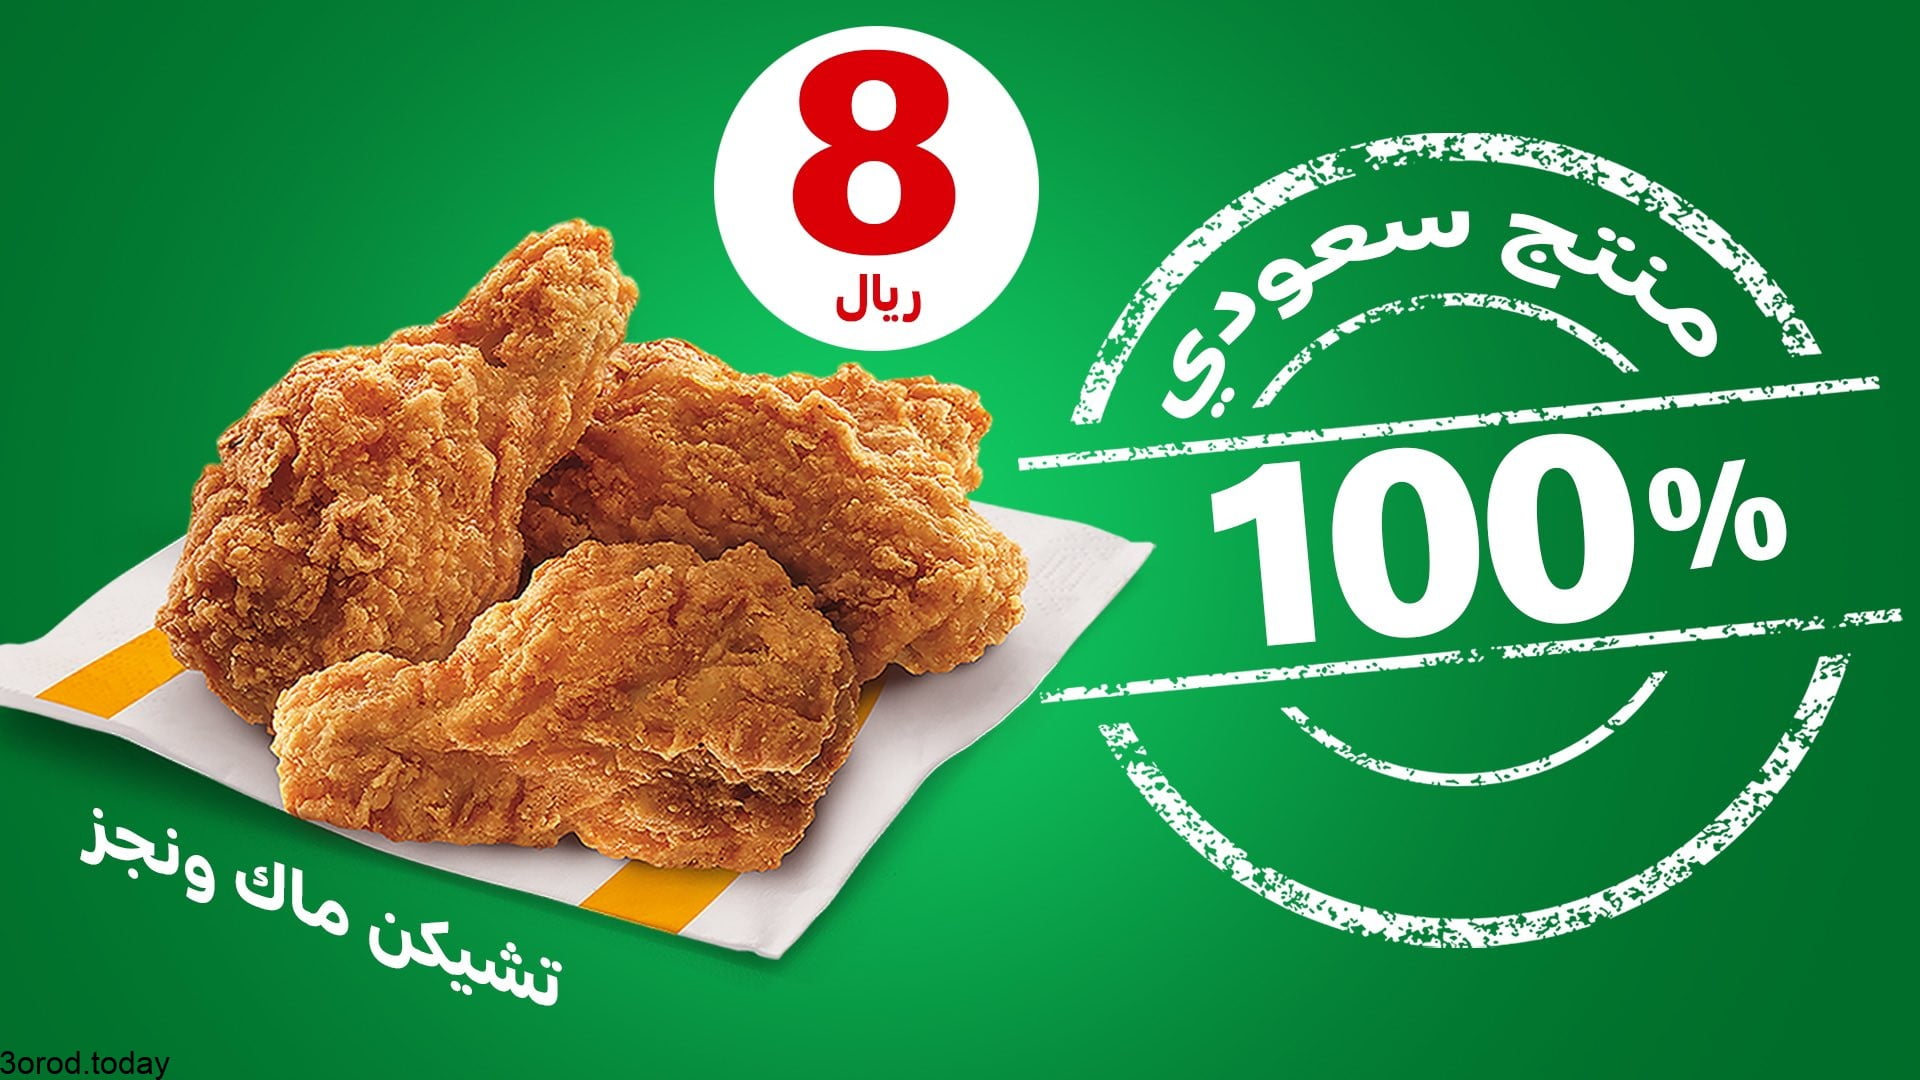 FFQzf97XMAYlI0u - عروض المطاعم : عروض مطعم ماكدونالدز السعودية المنطقة الشرقية و الشمالية